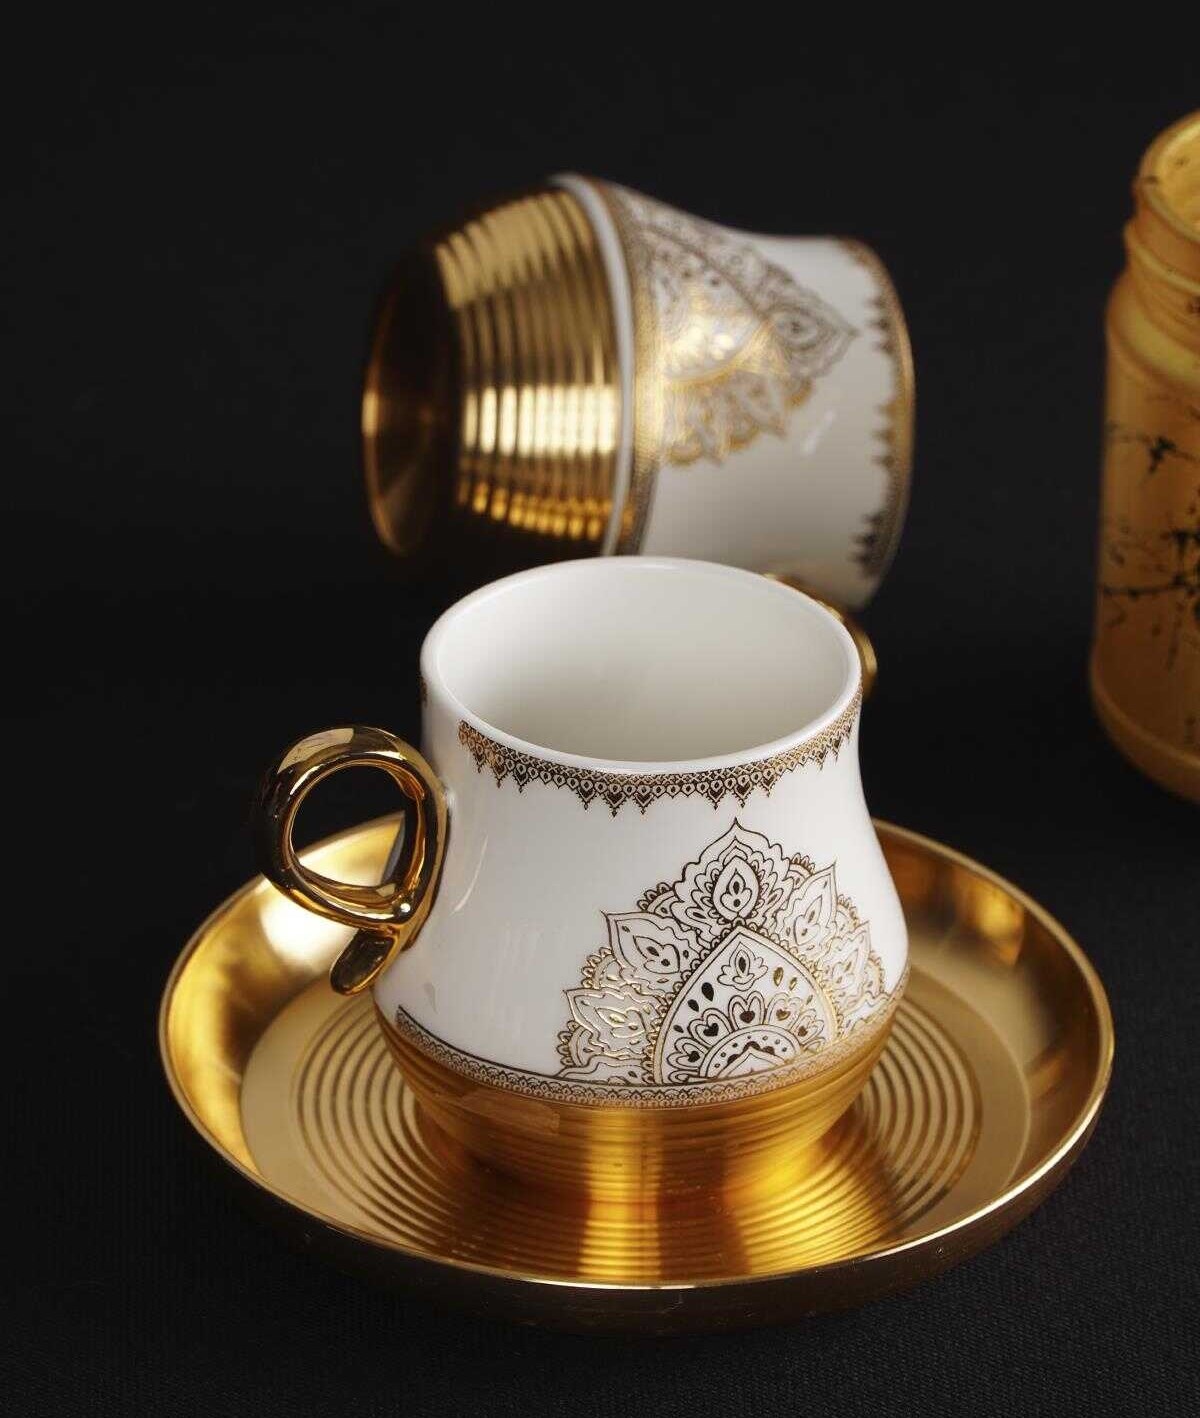 6'lı Volga Porselen Kahve Fincanı - Gold Yaldız